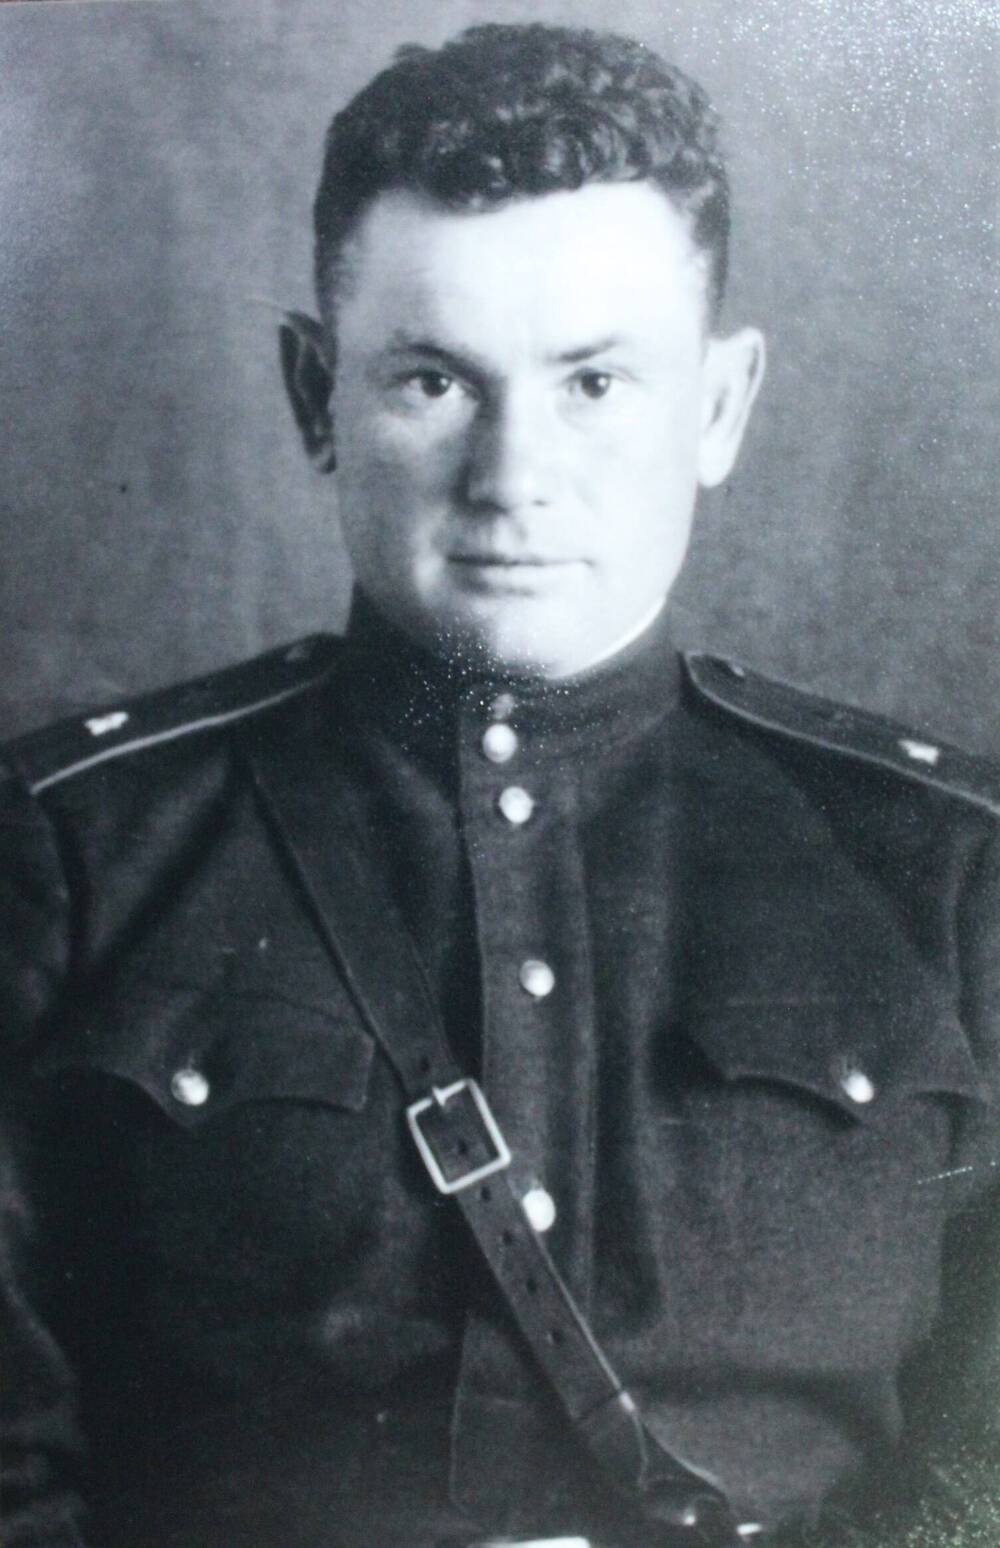 Фотокопия с ч/б фотографии Кафтанова П.Г. в гимнастерке образца 1943 г. с погонами генерал-майора, портупеей, 26.06.1943г.